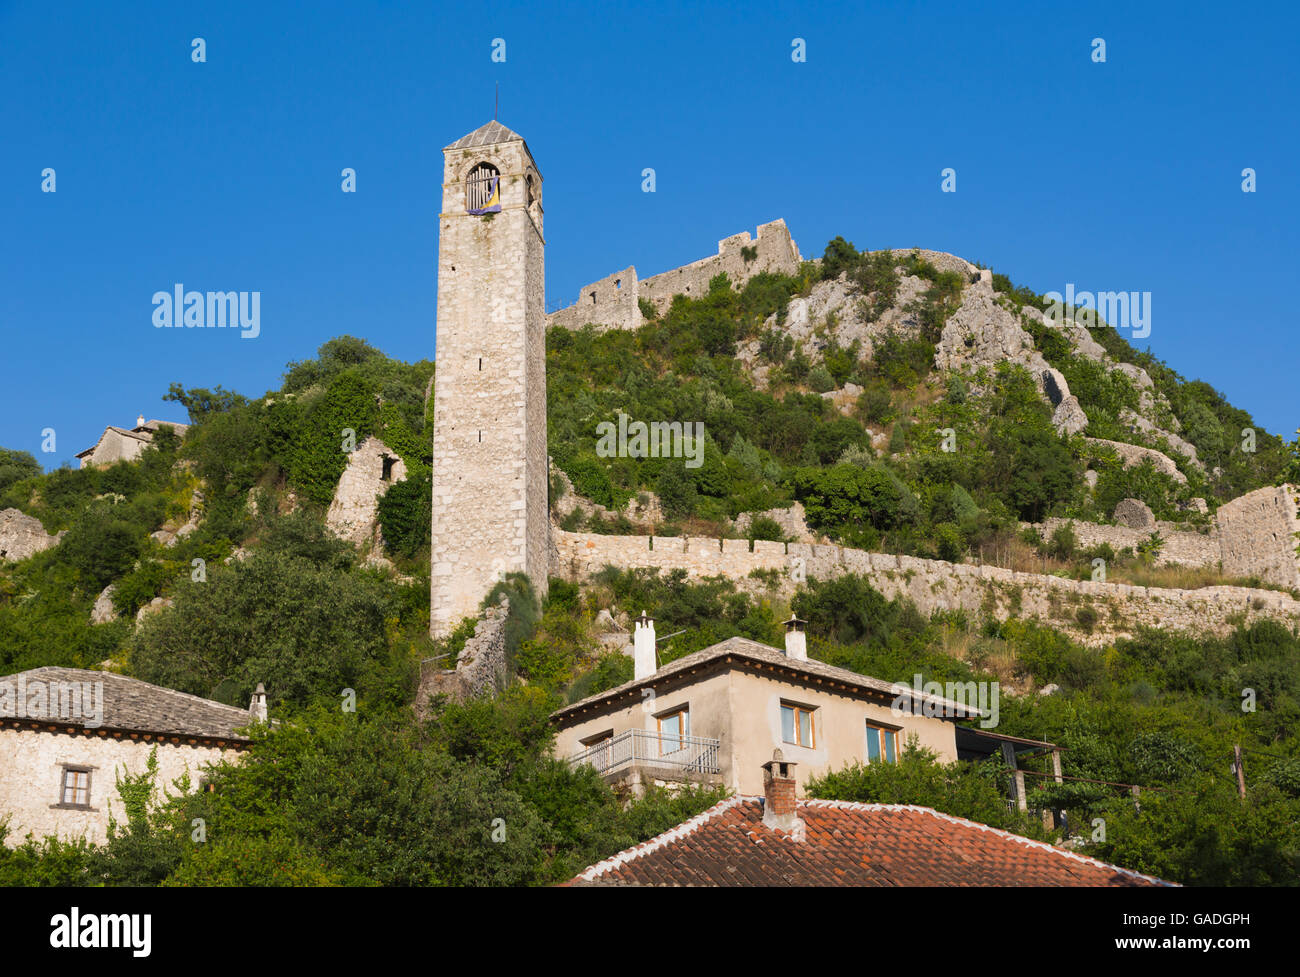 Pocitelj, République serbe de Bosnie et Herzégovine. La tour de l'horloge. Banque D'Images